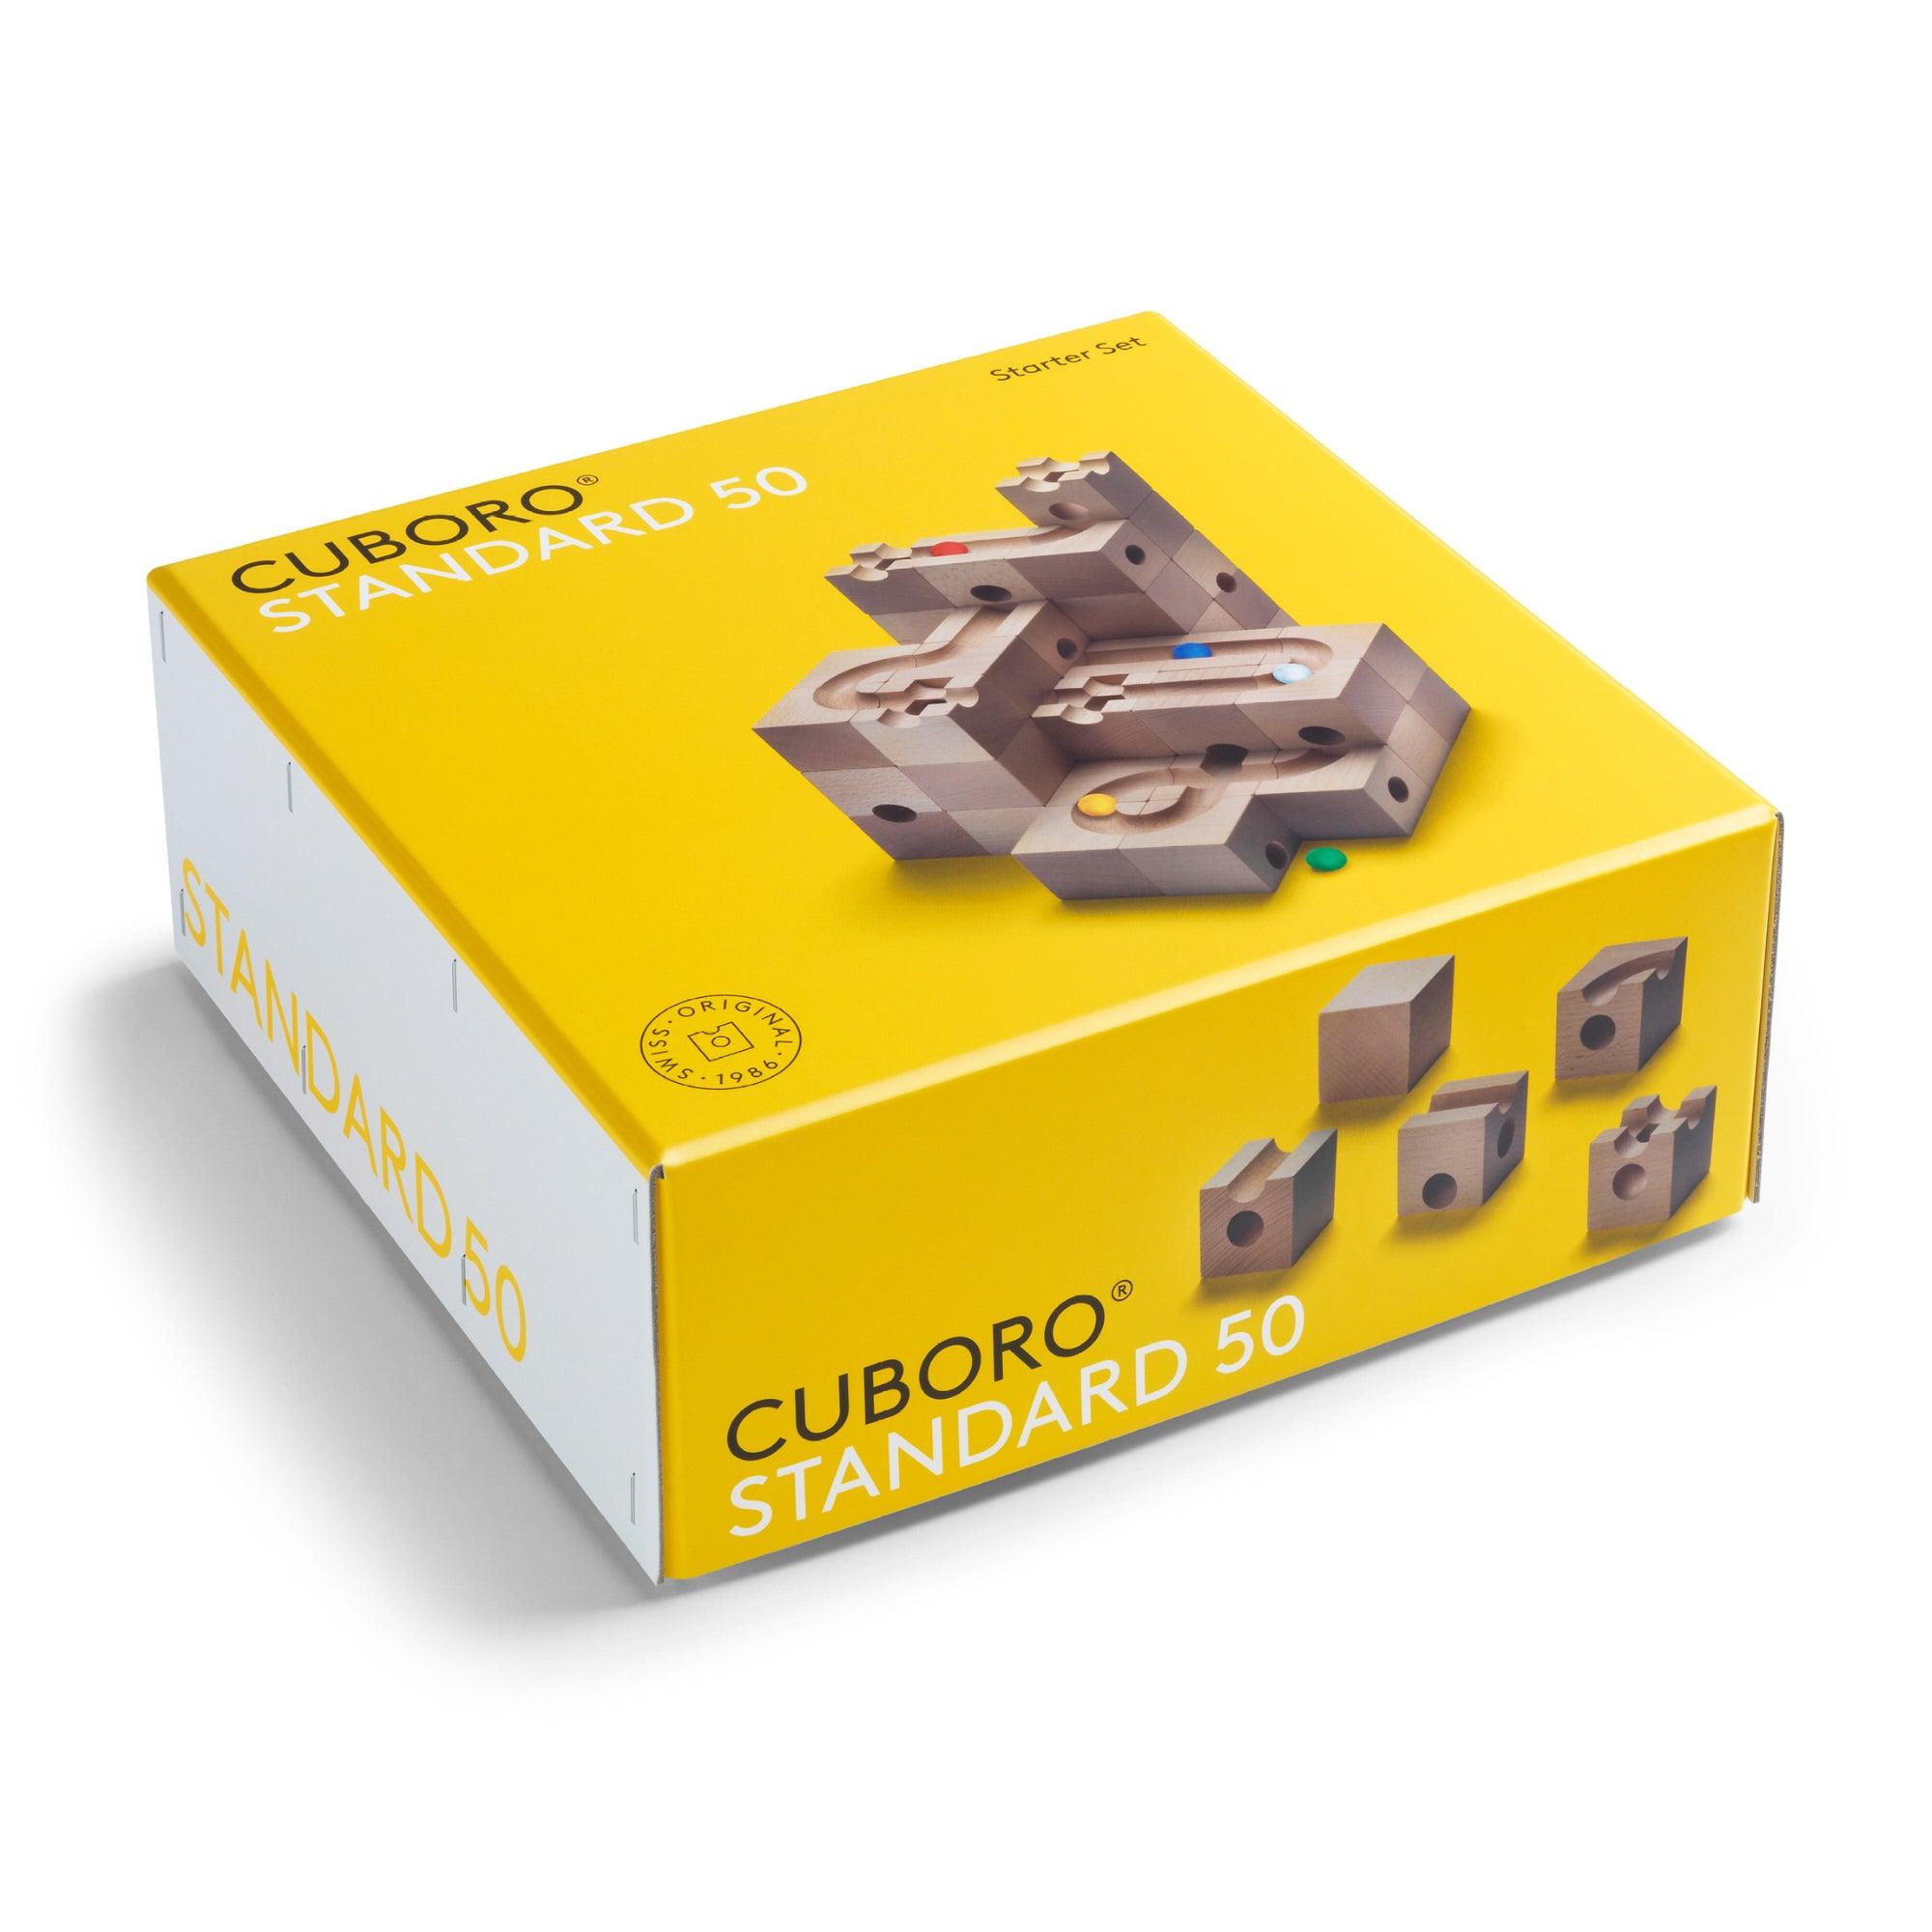 Cuboro Standard 50 Teile - ab 5 Jahren - www. kunstundspiel .de 0204